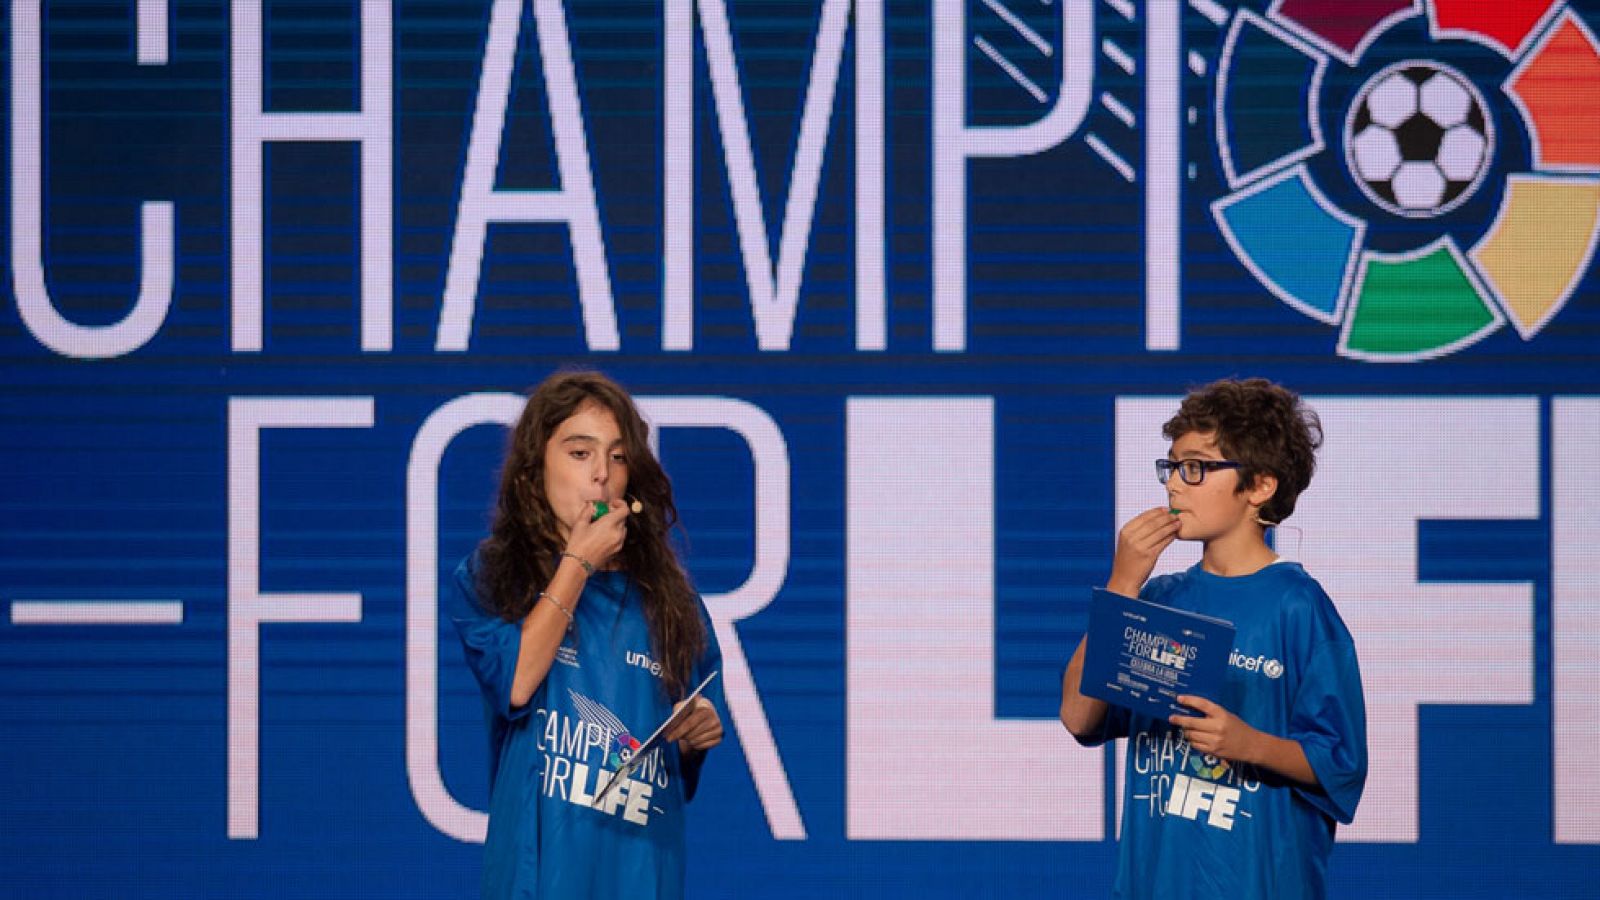 Mario y Ana Luna, MasterChef Junior, presentan el partido solidario 'Champions for life'